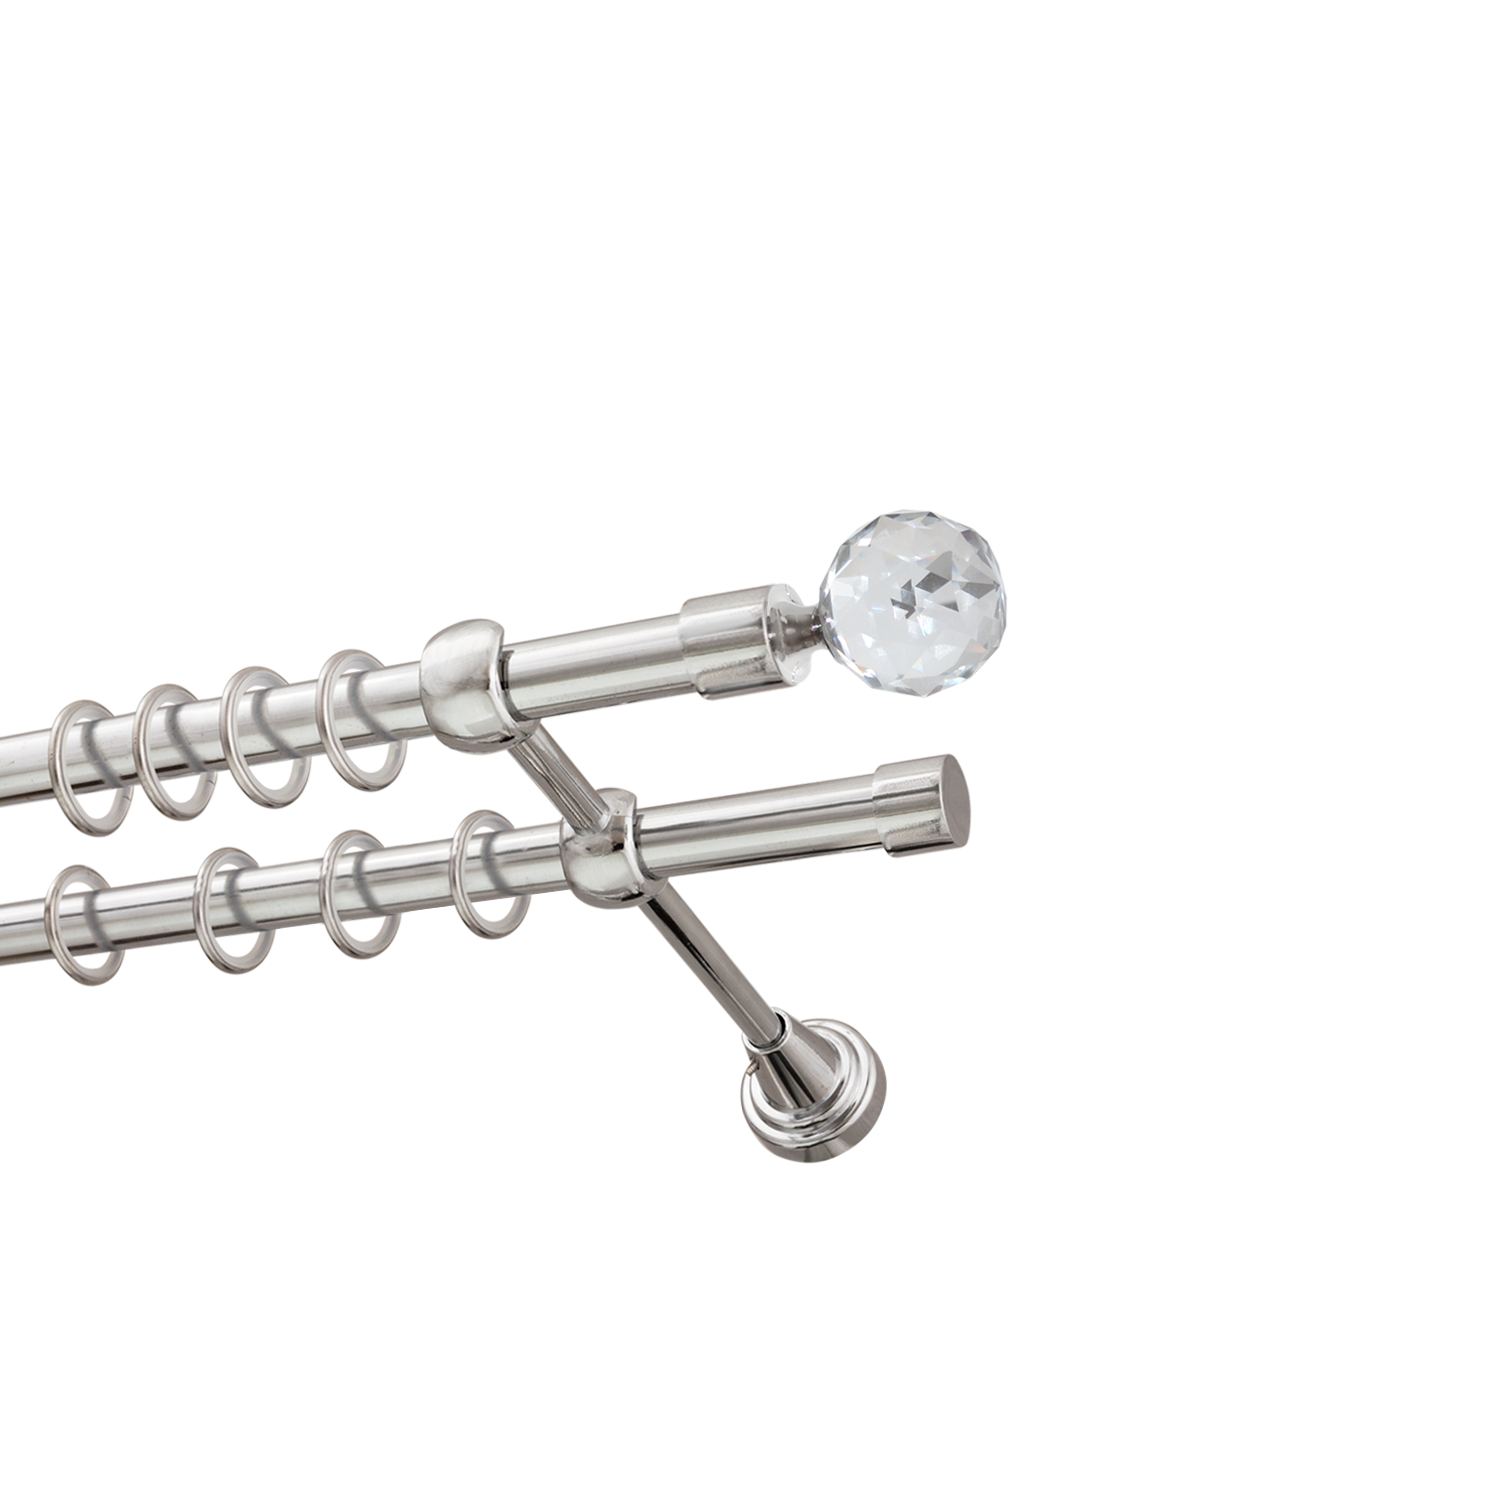 Металлический карниз для штор Карат, двухрядный 16/16 мм, серебро, гладкая штанга, длина 240 см